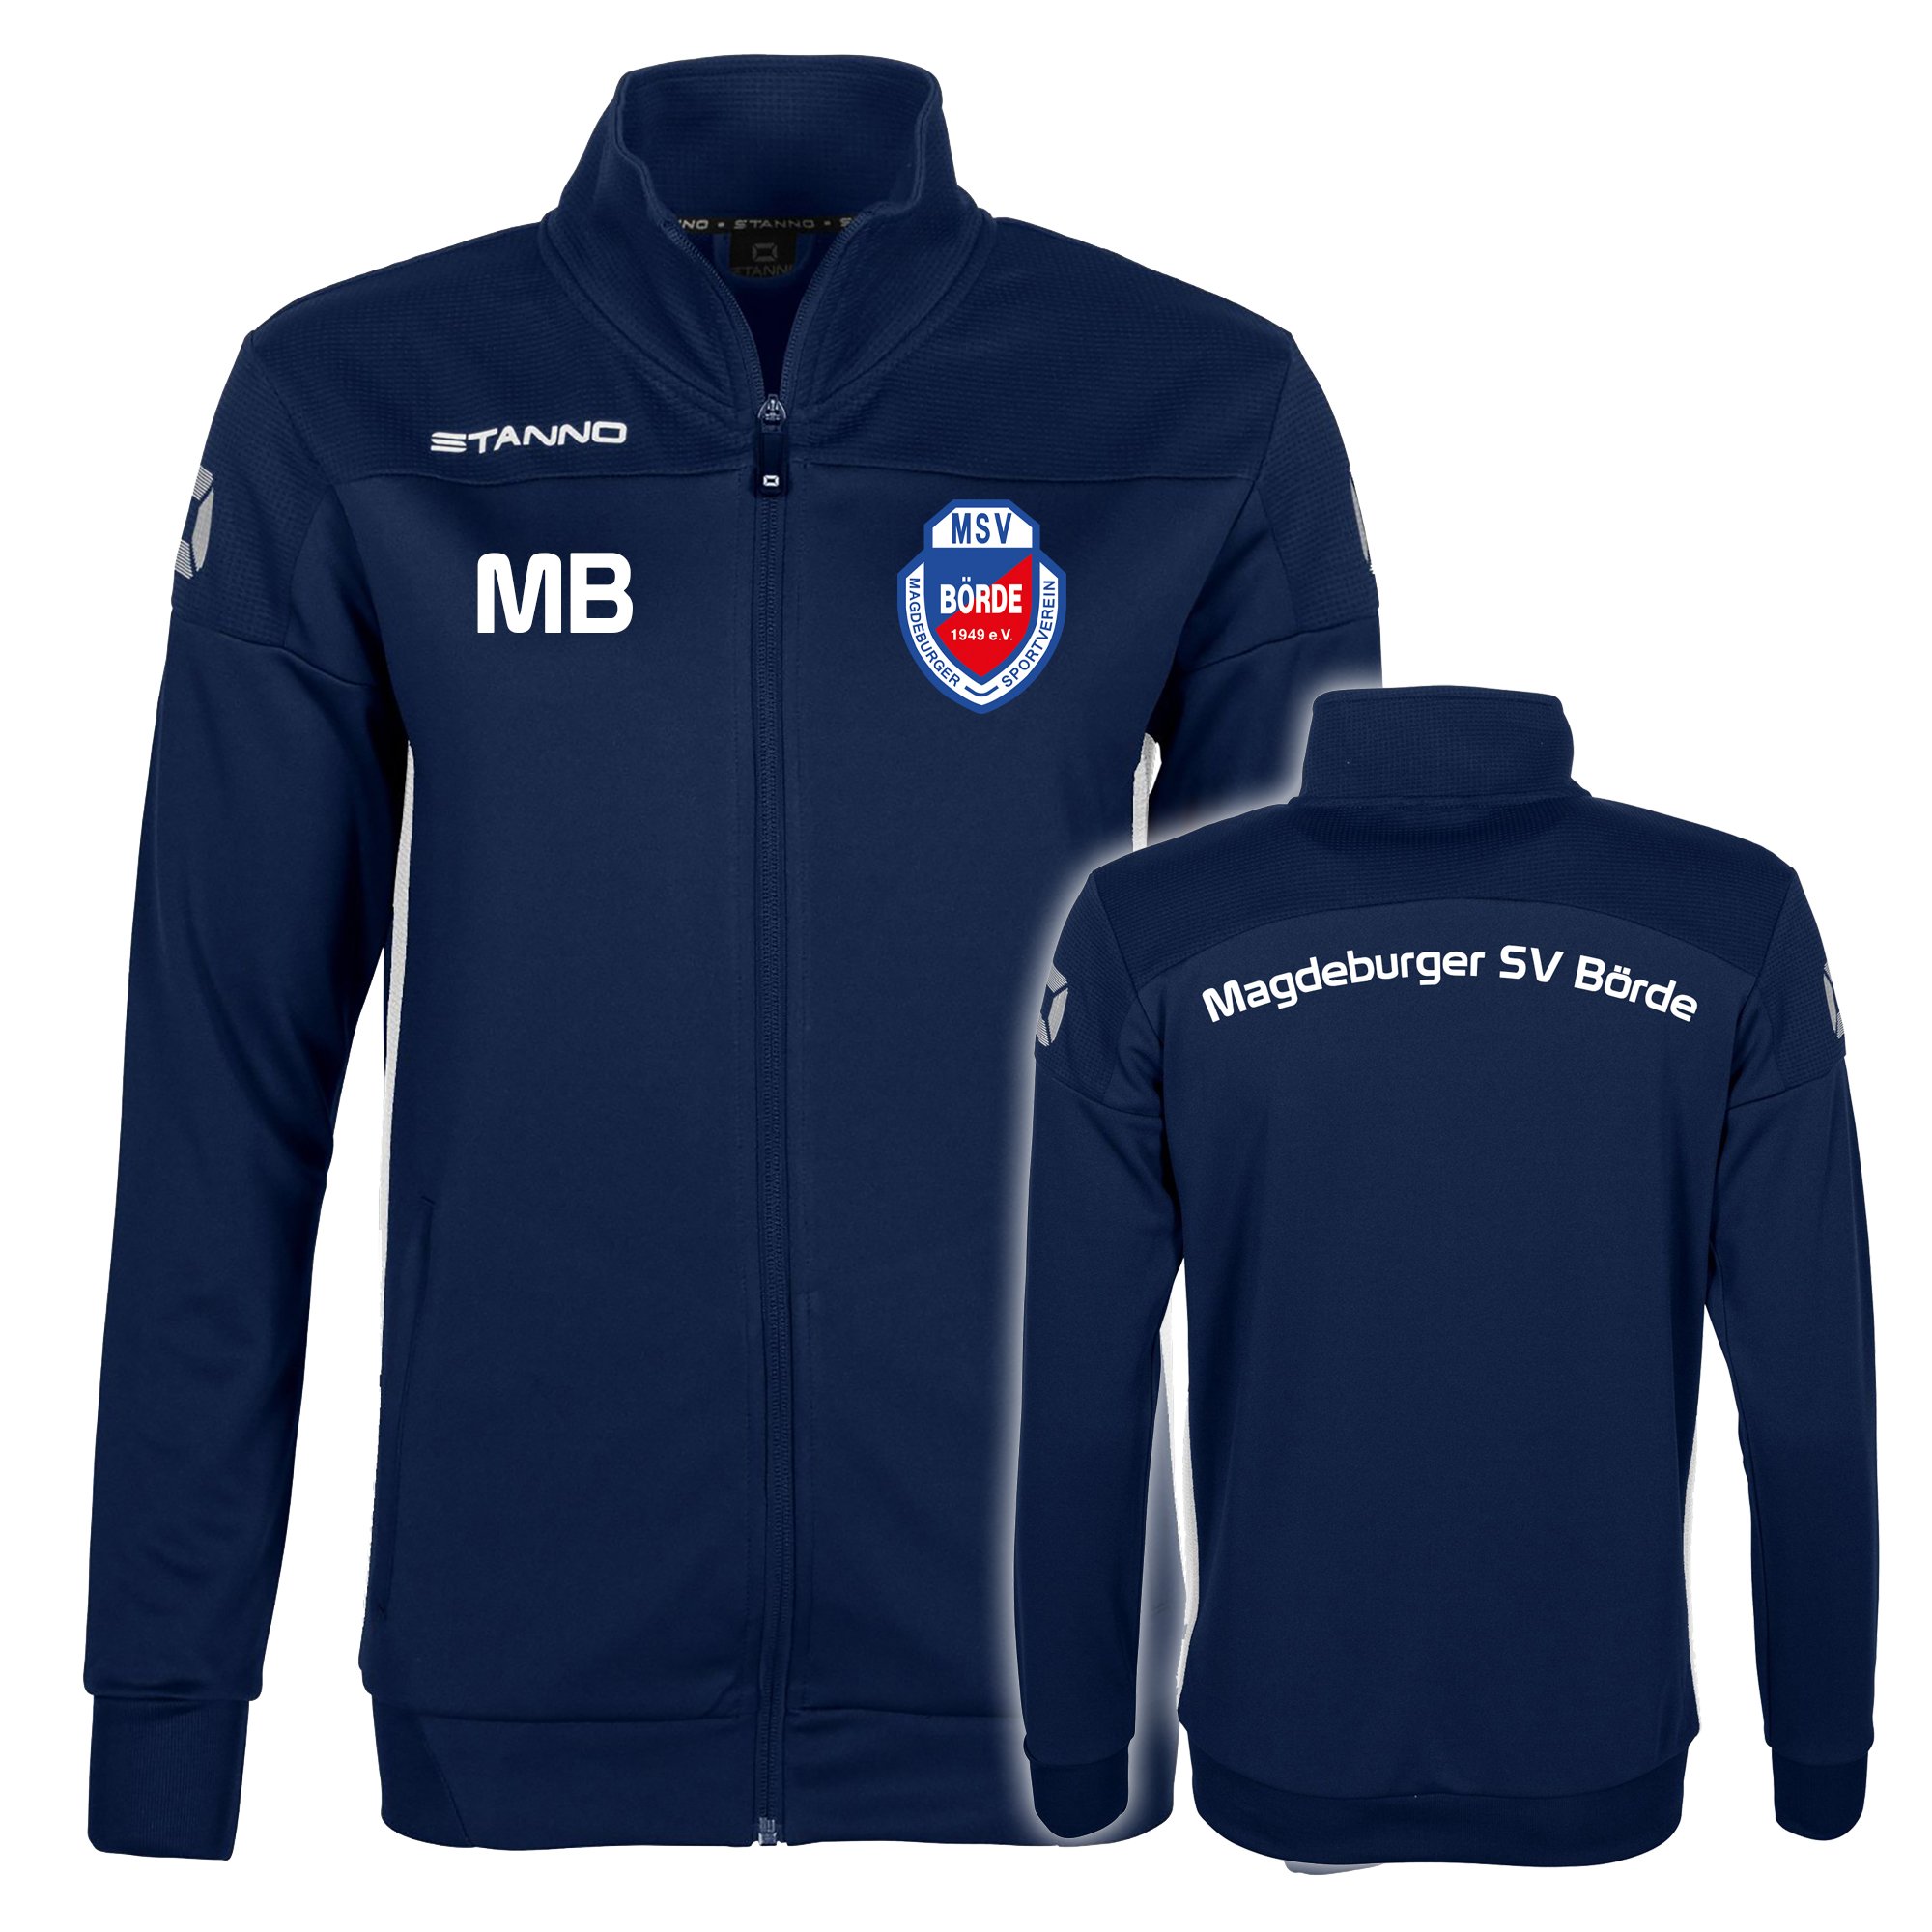 Magdeburger SV Börde Trainingsjacke Damen